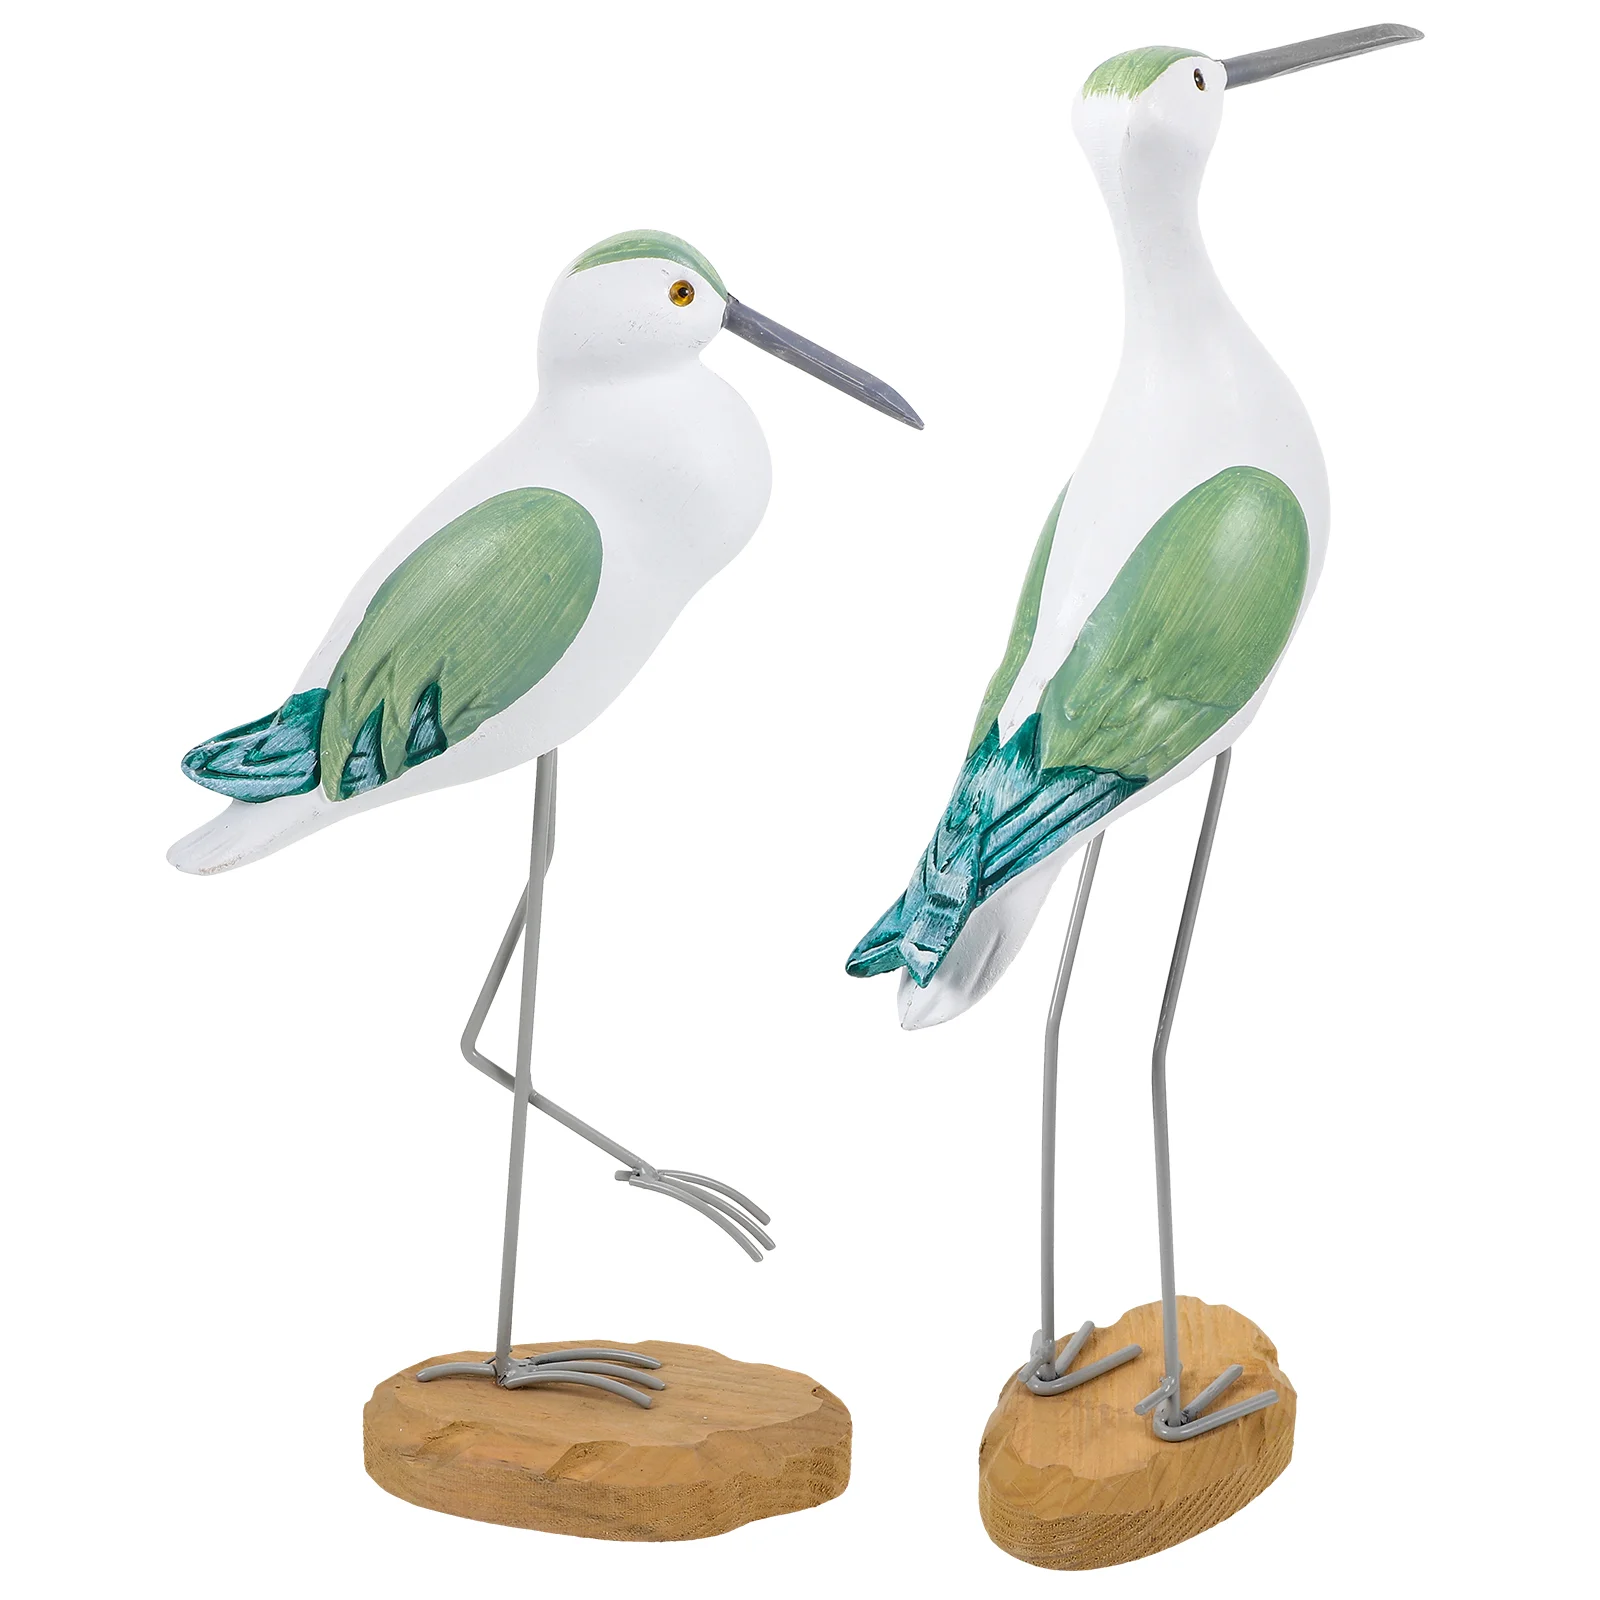 

Imikeya украшения в виде чайки, уличный Декор для дома, подставка для телевизора, настольная пляжная статуя в виде птицы, Приморский океан, деревянное ремесло